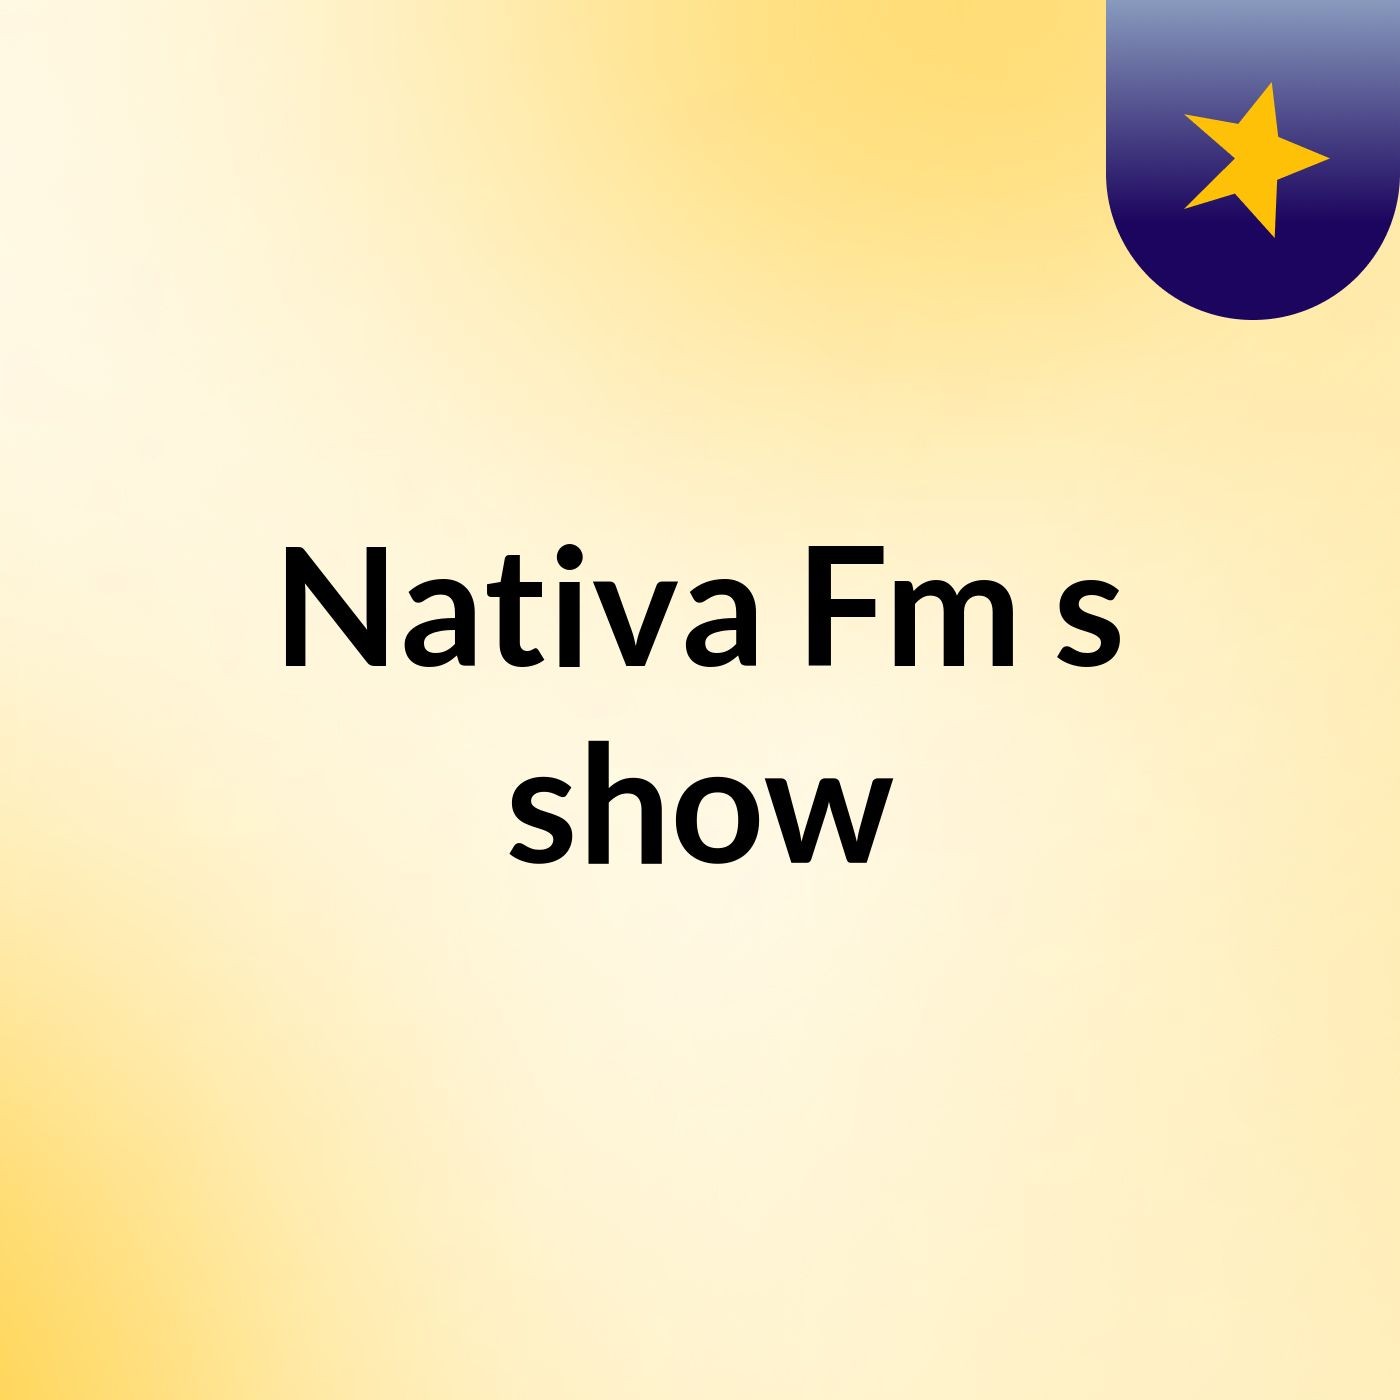 Nativa Fm's show